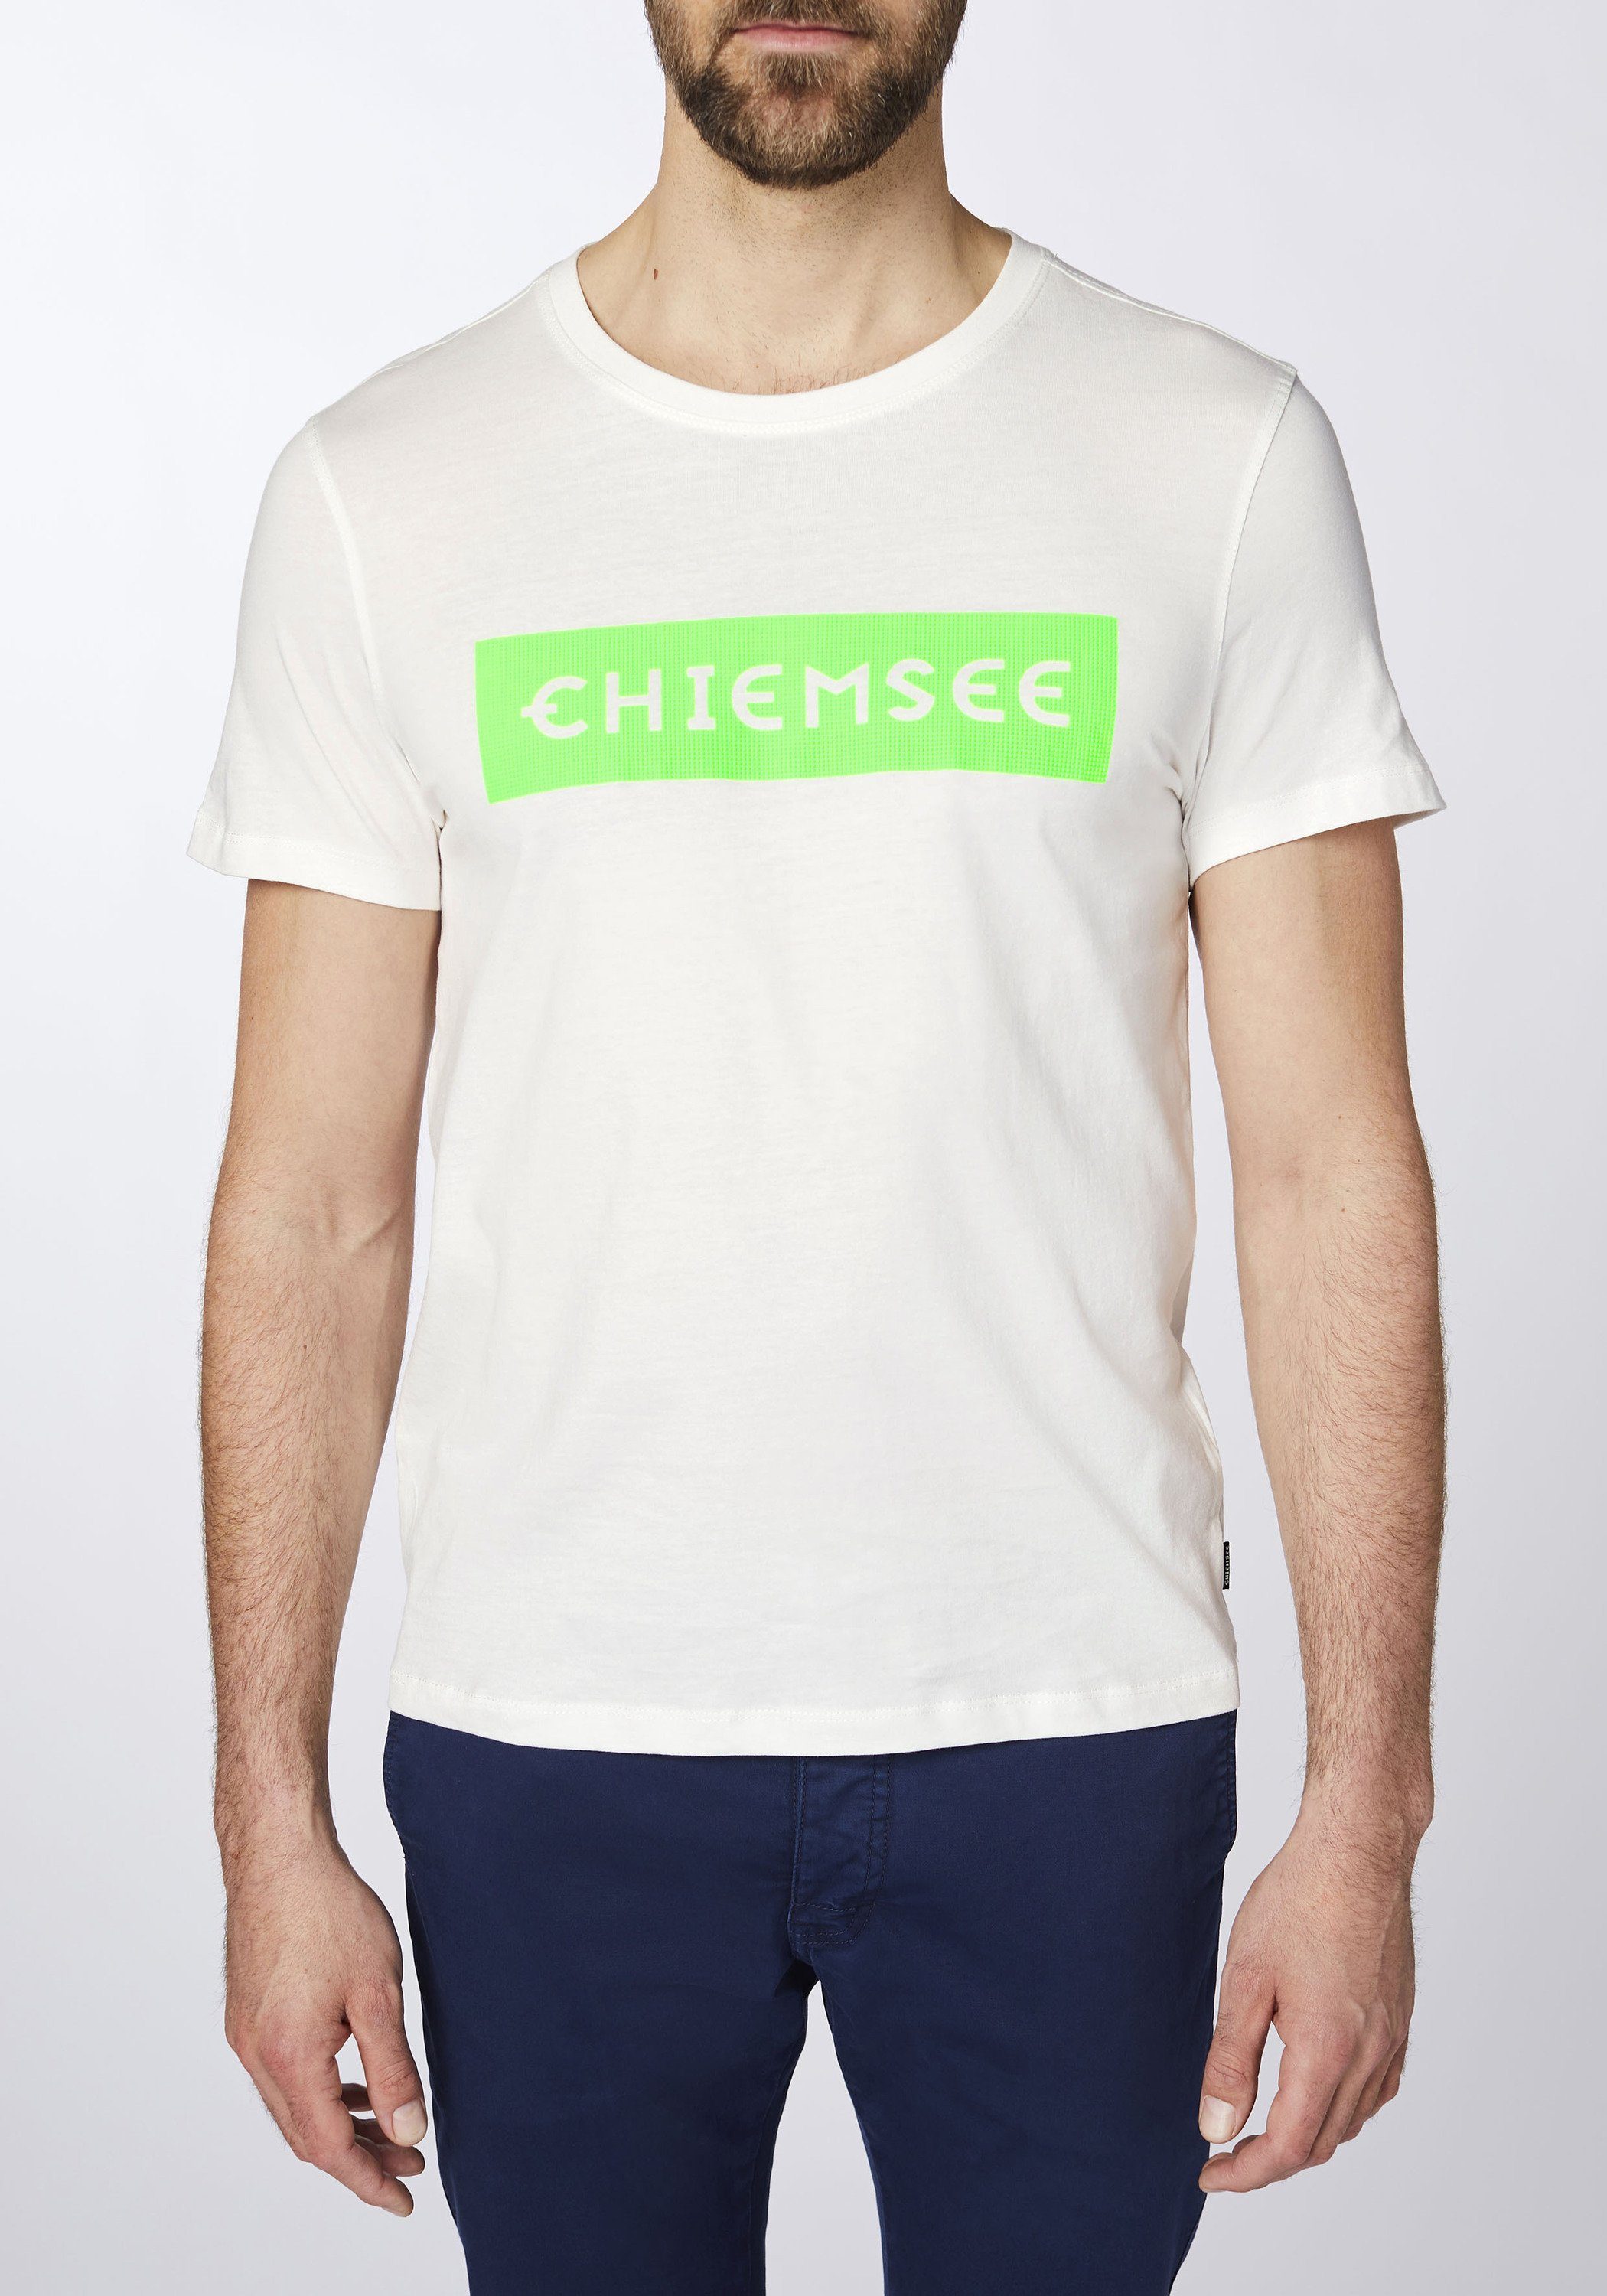 Chiemsee Print-Shirt T-Shirt Grn Dif plakativem mit Markenschriftzug 1 Wht/Md